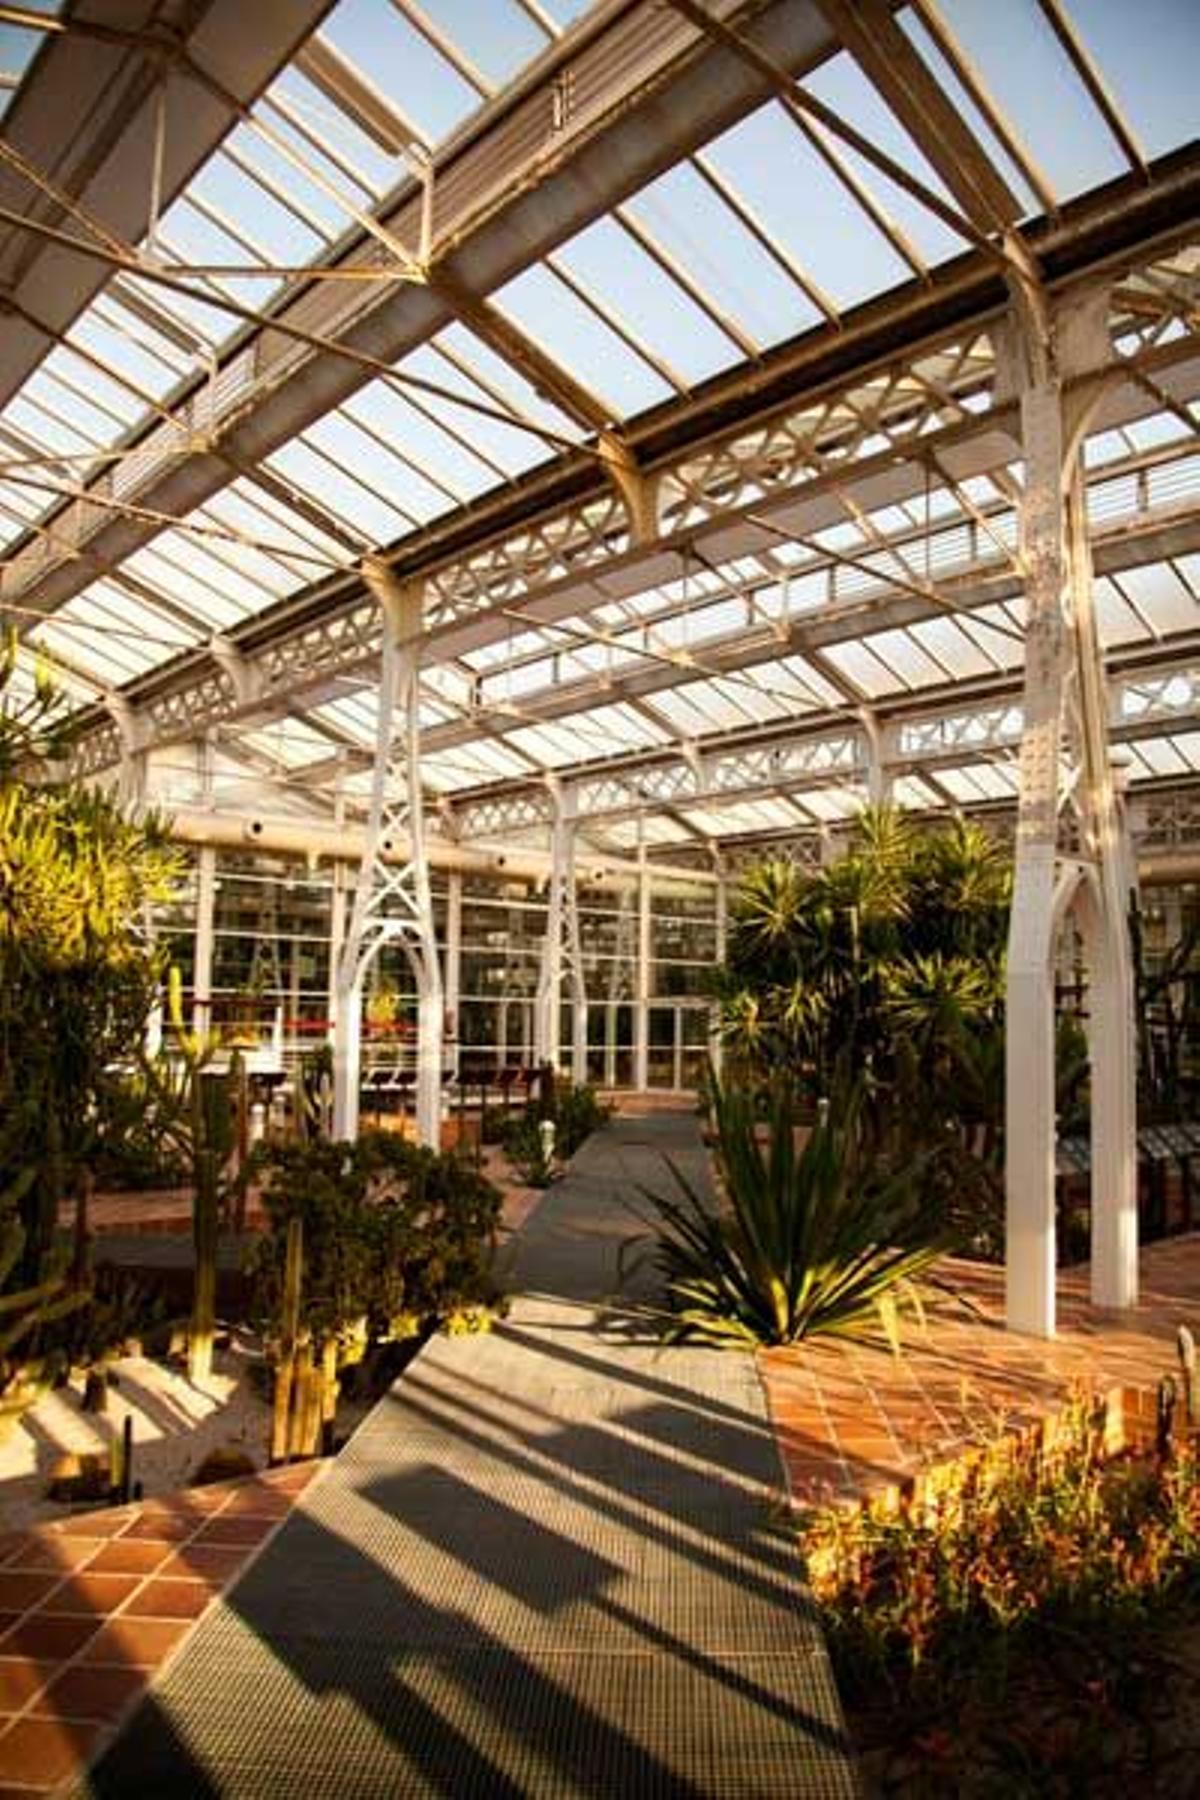 En el antiguo Matadero Municipal de Arganzuela, el Palacio de Cristal acoge un invernadero con con más de 9.000 especies de plantas en cuatro biotopos diferenciados.